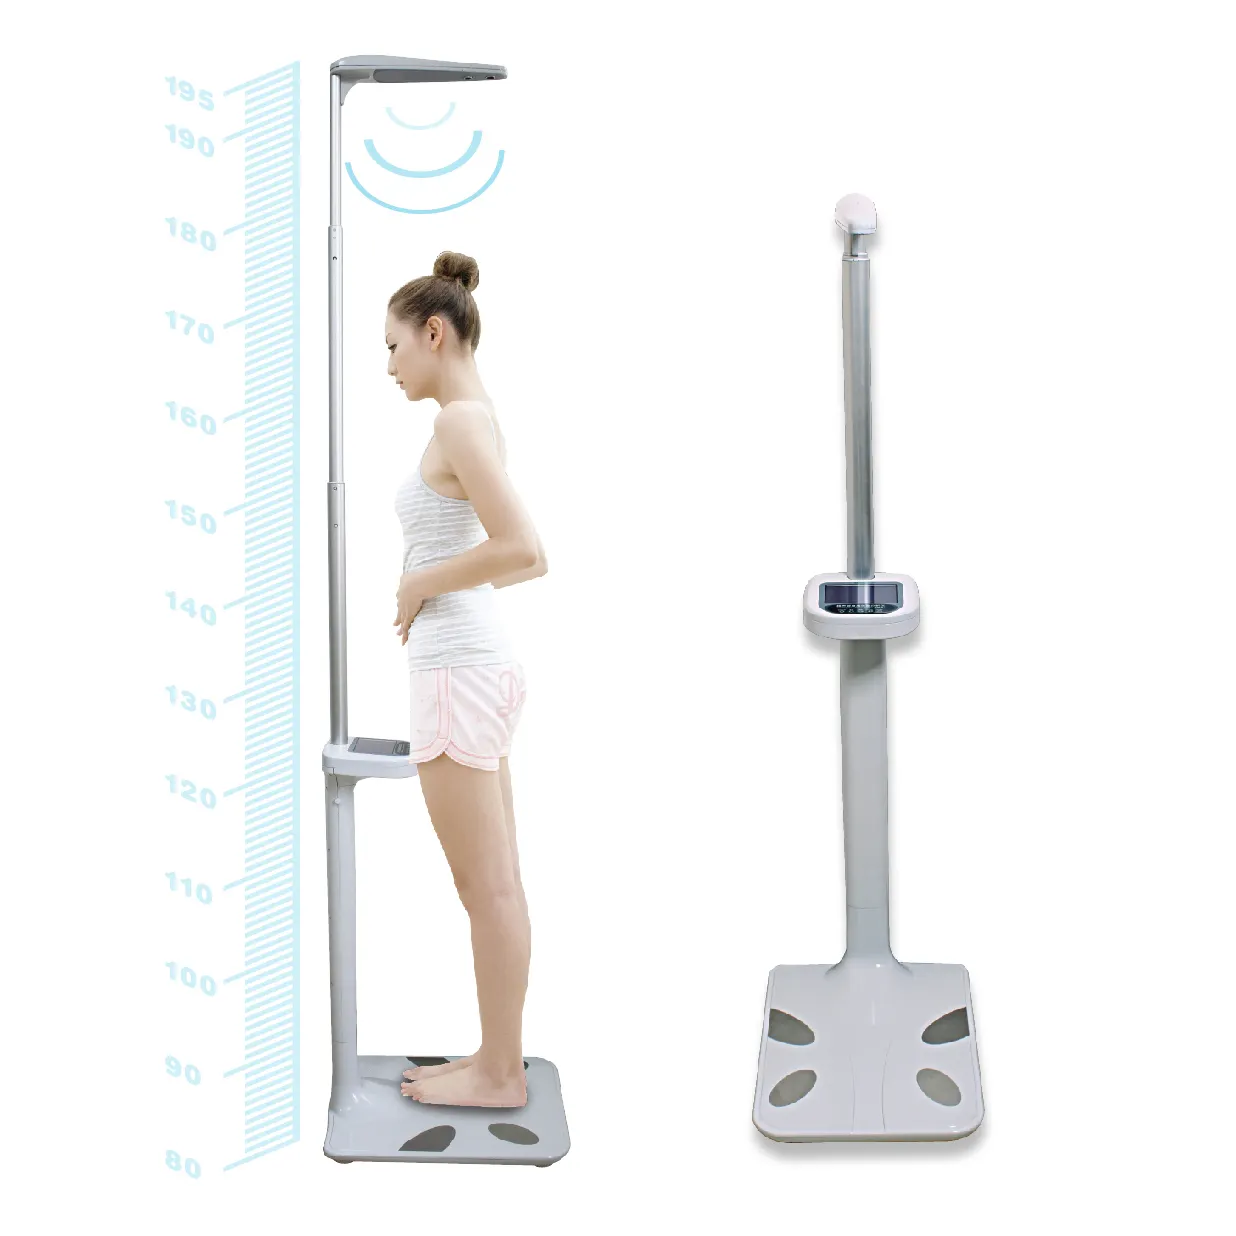 IMC-báscula Digital de 200KG para medir la altura corporal, medidor de grasa corporal ultrasónico para personas